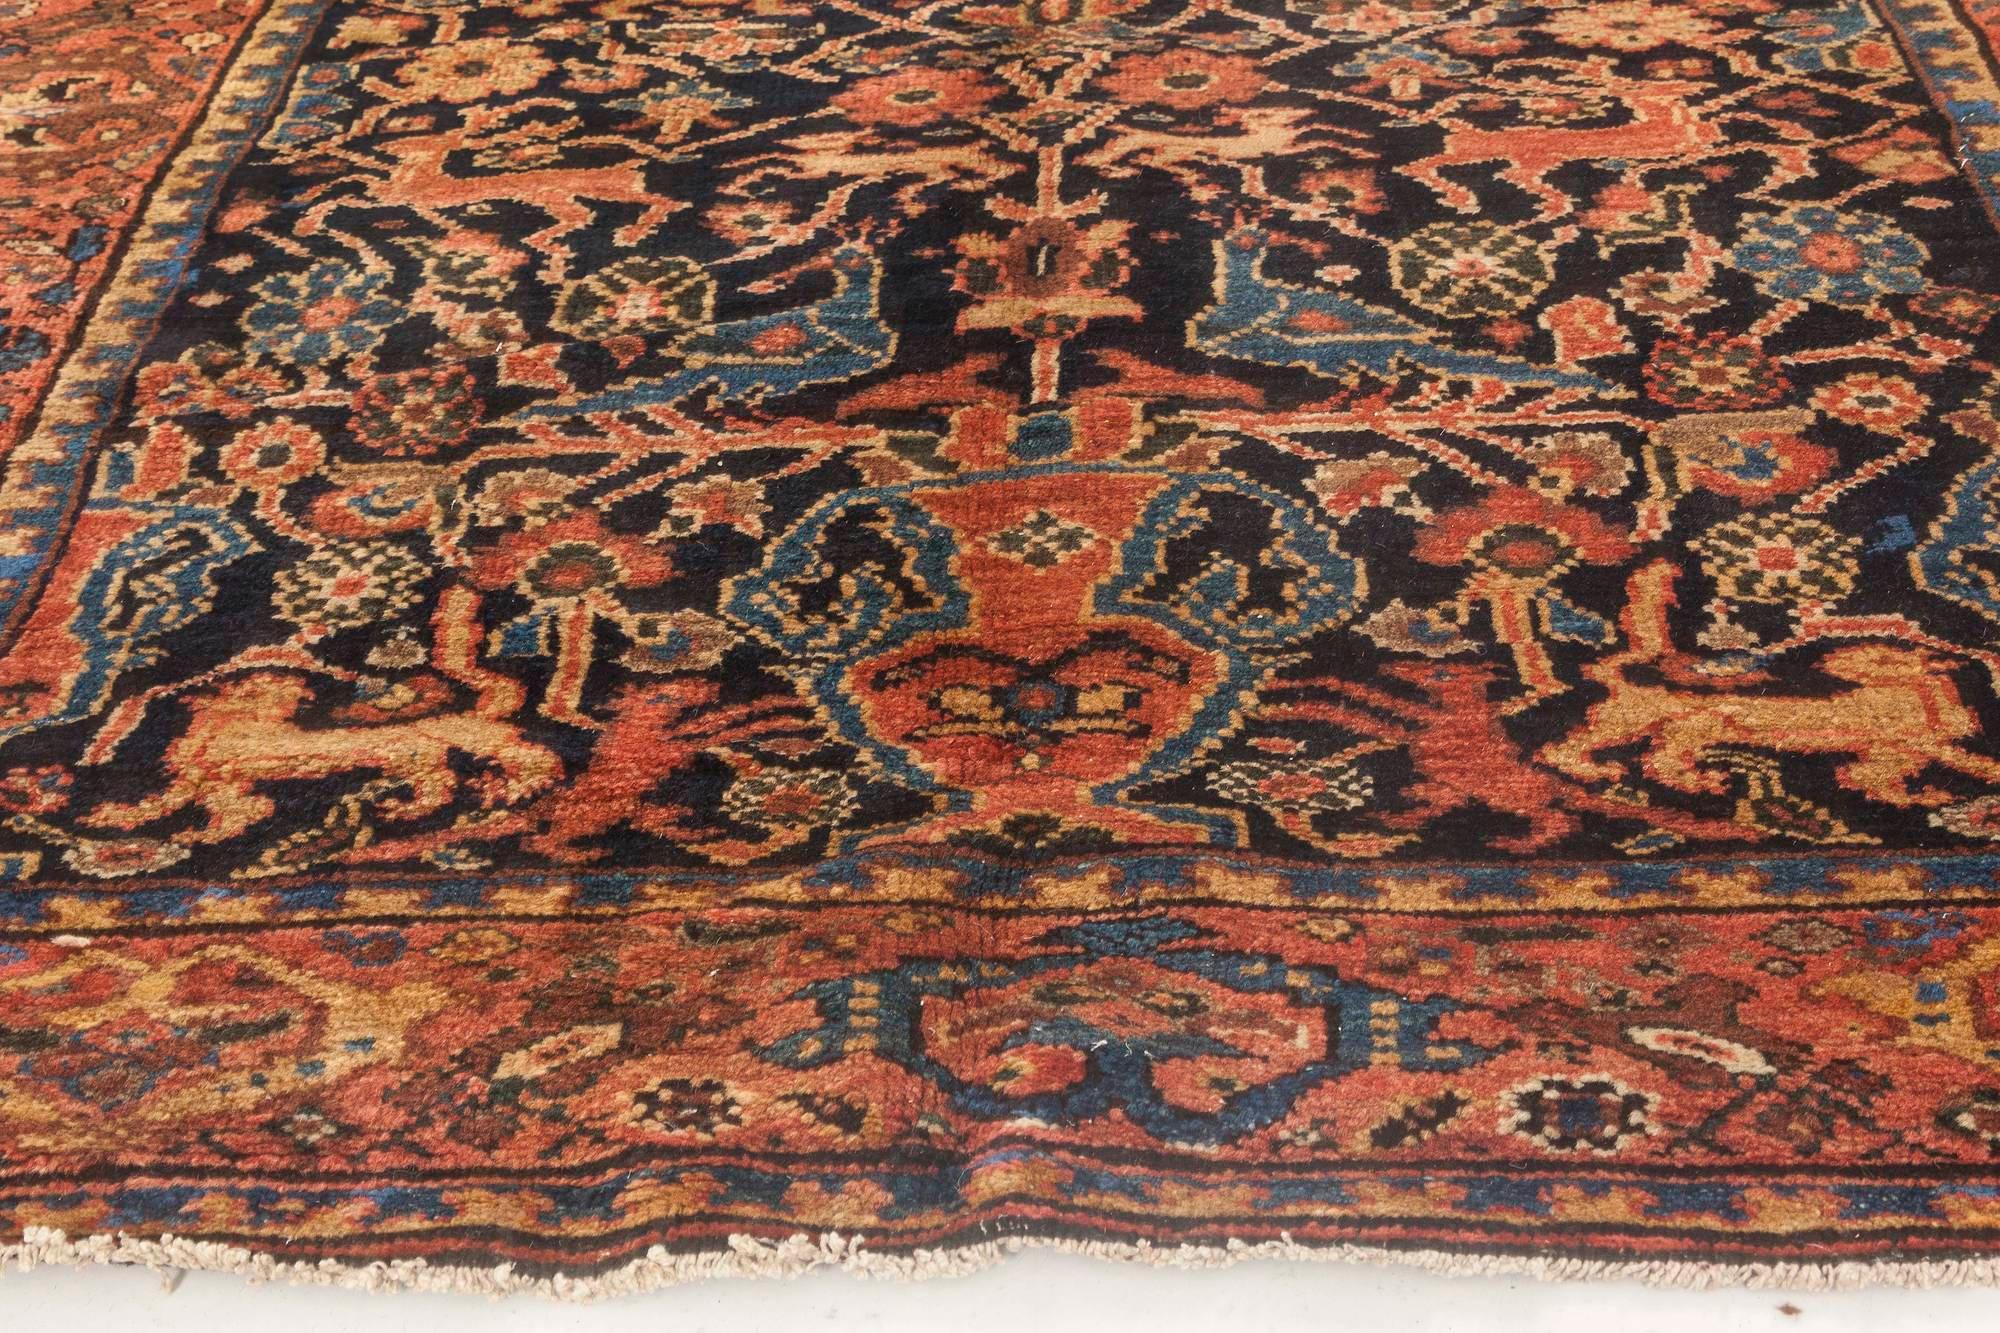 20th Century Antique Persian Feraghan Black, Rosewood, Teal and Sandy Beige Handmade Wool Rug